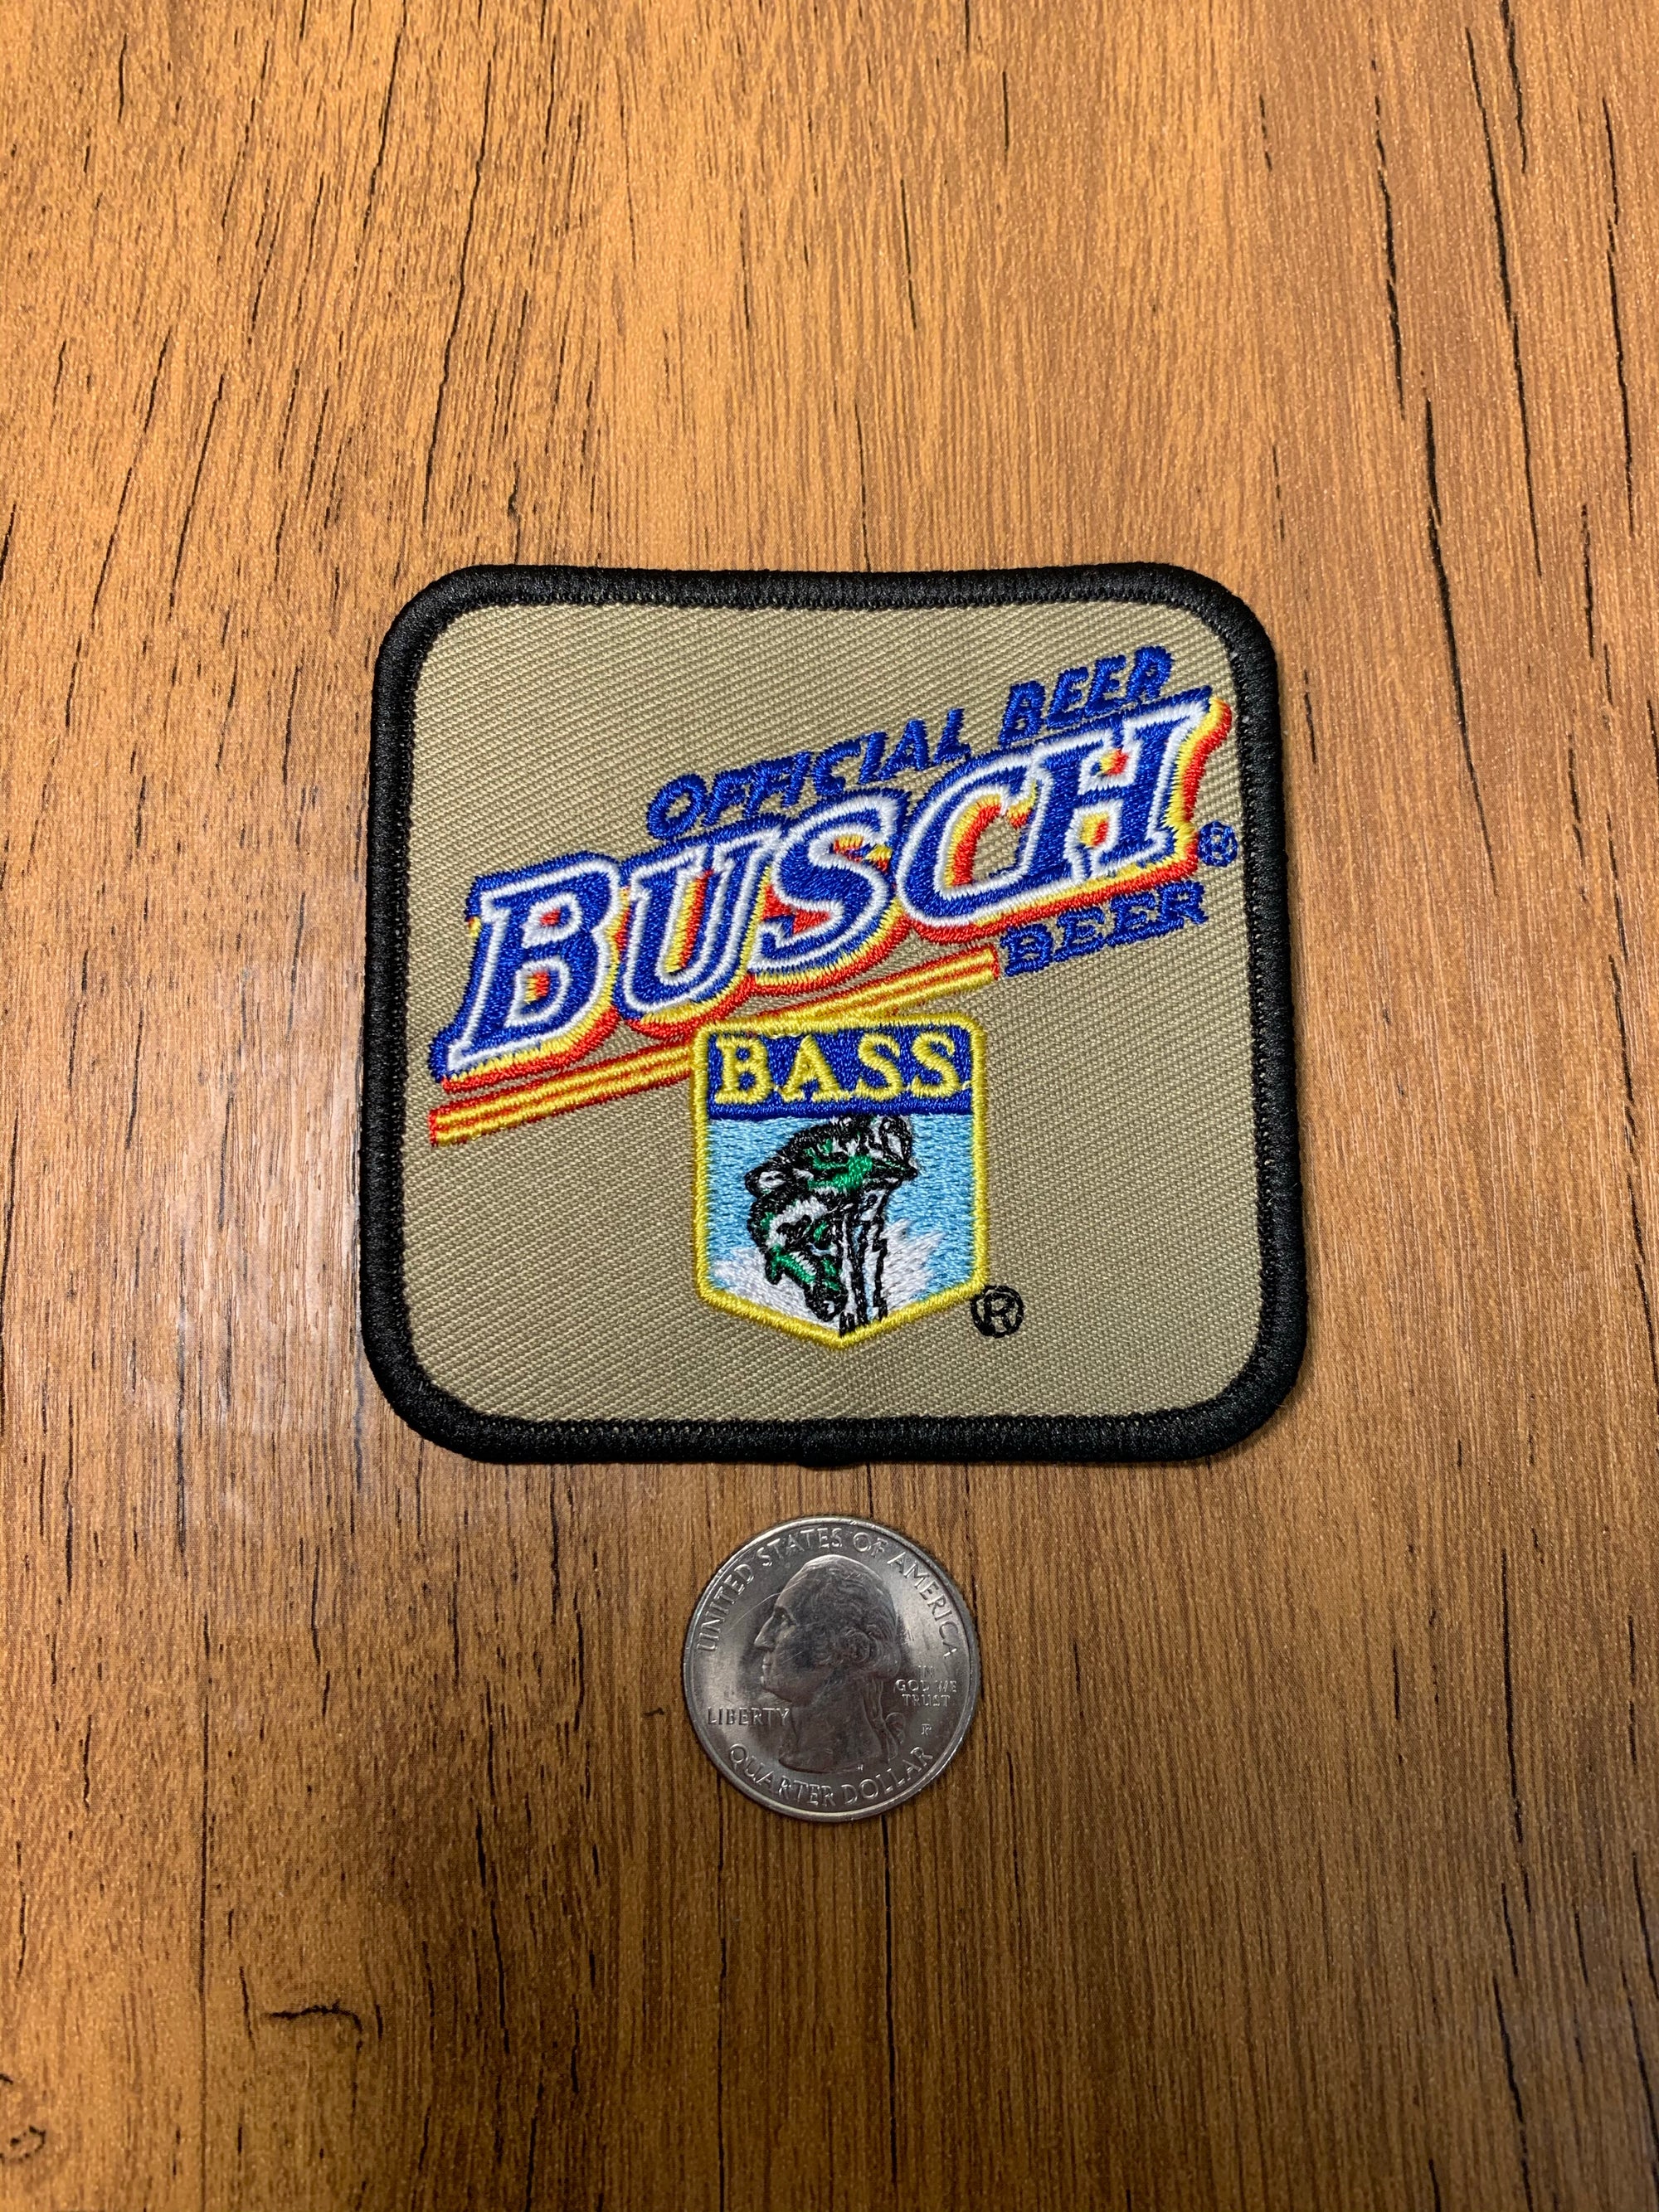 Official Beer Busch- Bass